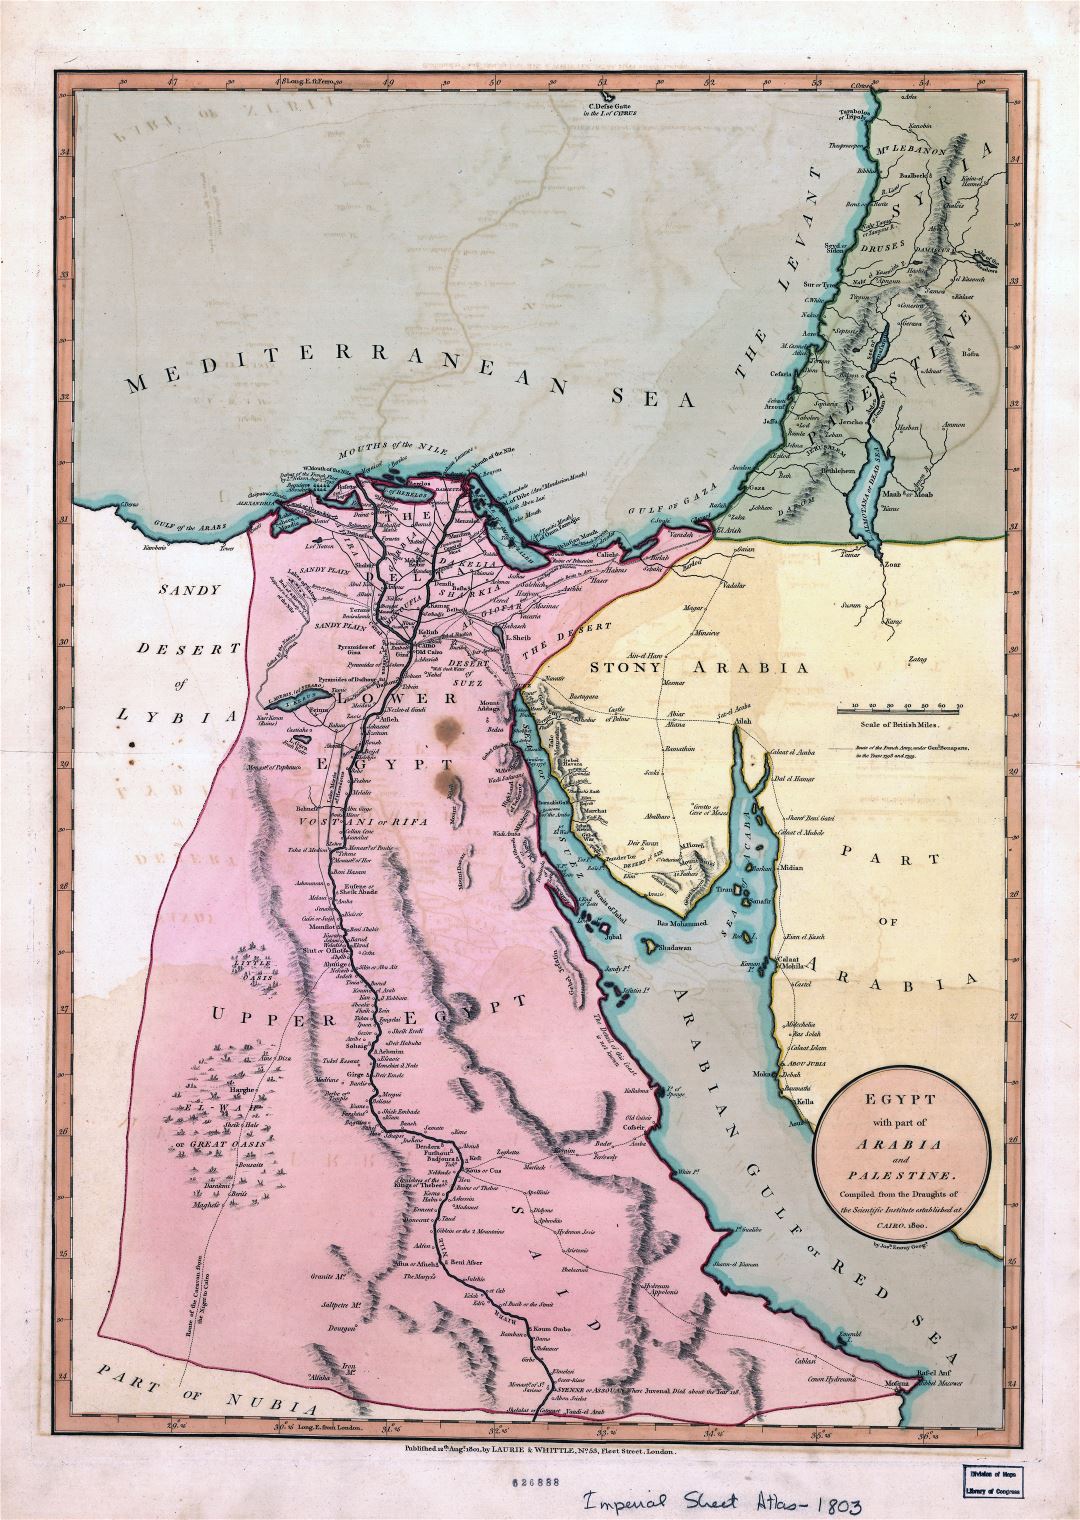 A gran escala antiguo mapa de Egipto con parte de Arabia y Palestina - 1800